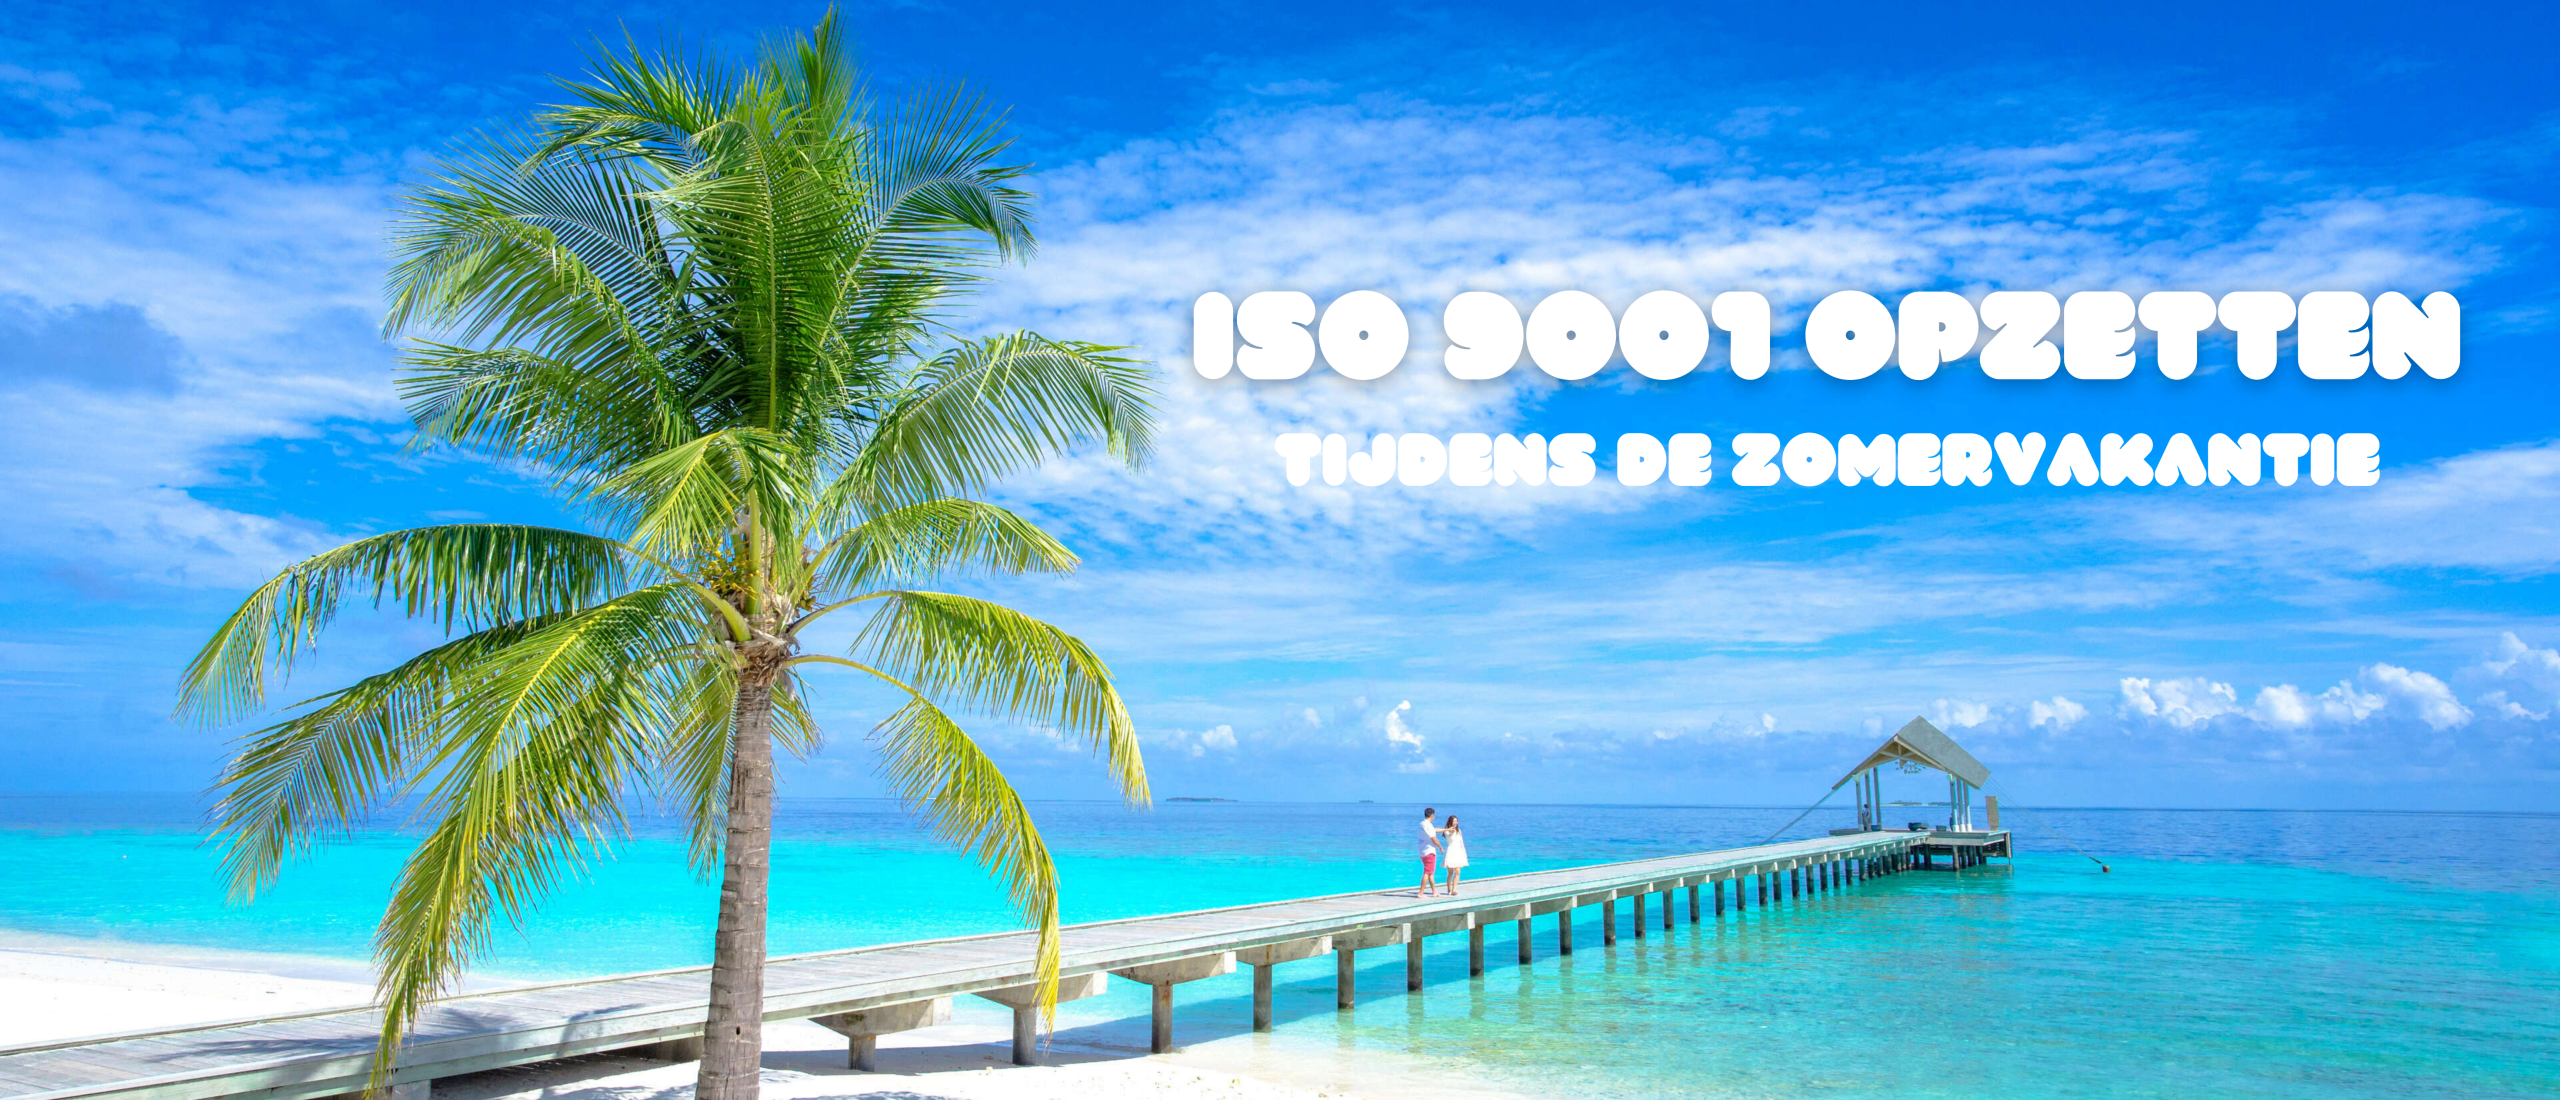 ISO 9001 opzetten tijdens de zomervakantie